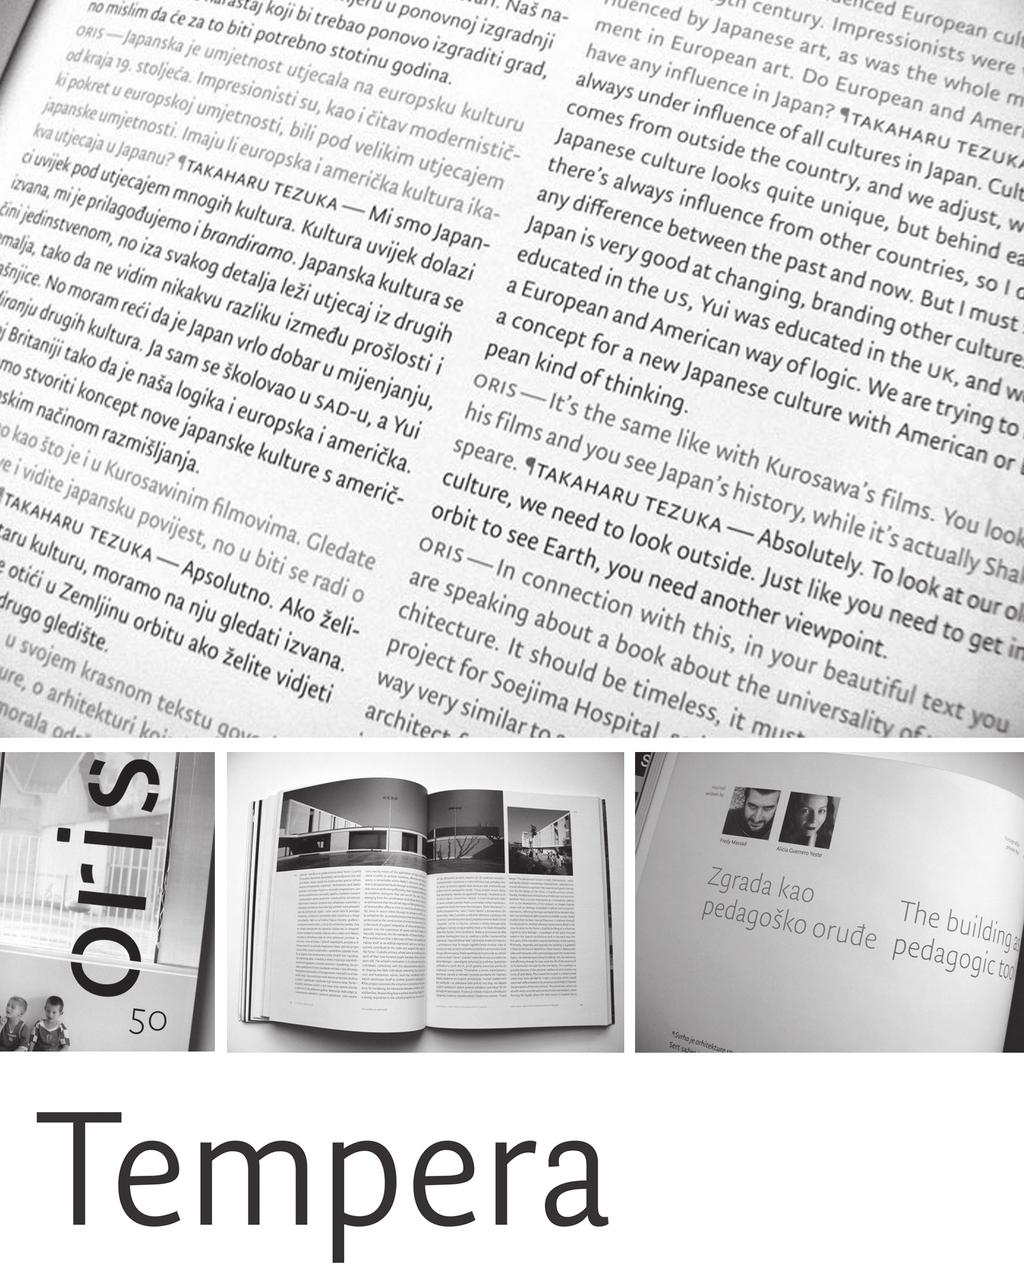 časopis za suvremena likovna zbivanja Časopis Oris, dizajn Damir Bralić, Vanja Cuculić, Nikola Đurek, pismo Tempera, 2008.